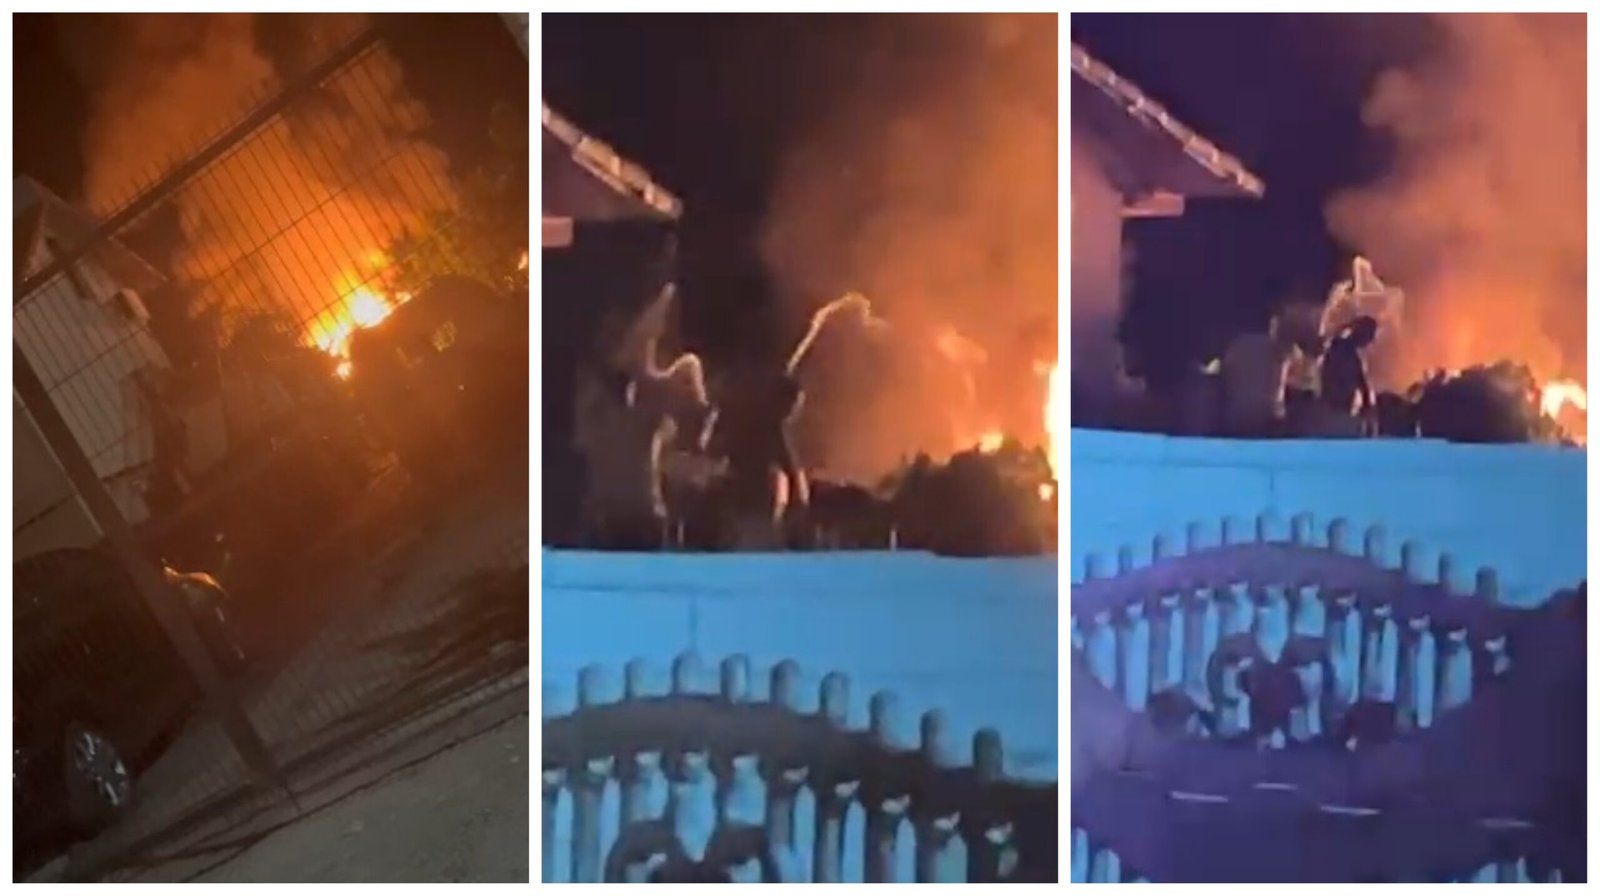 (VIDEO) Incendiu la o casă din Mangalia. Oamenii încercă să stingă flăcările, în așteptarea pompierilor